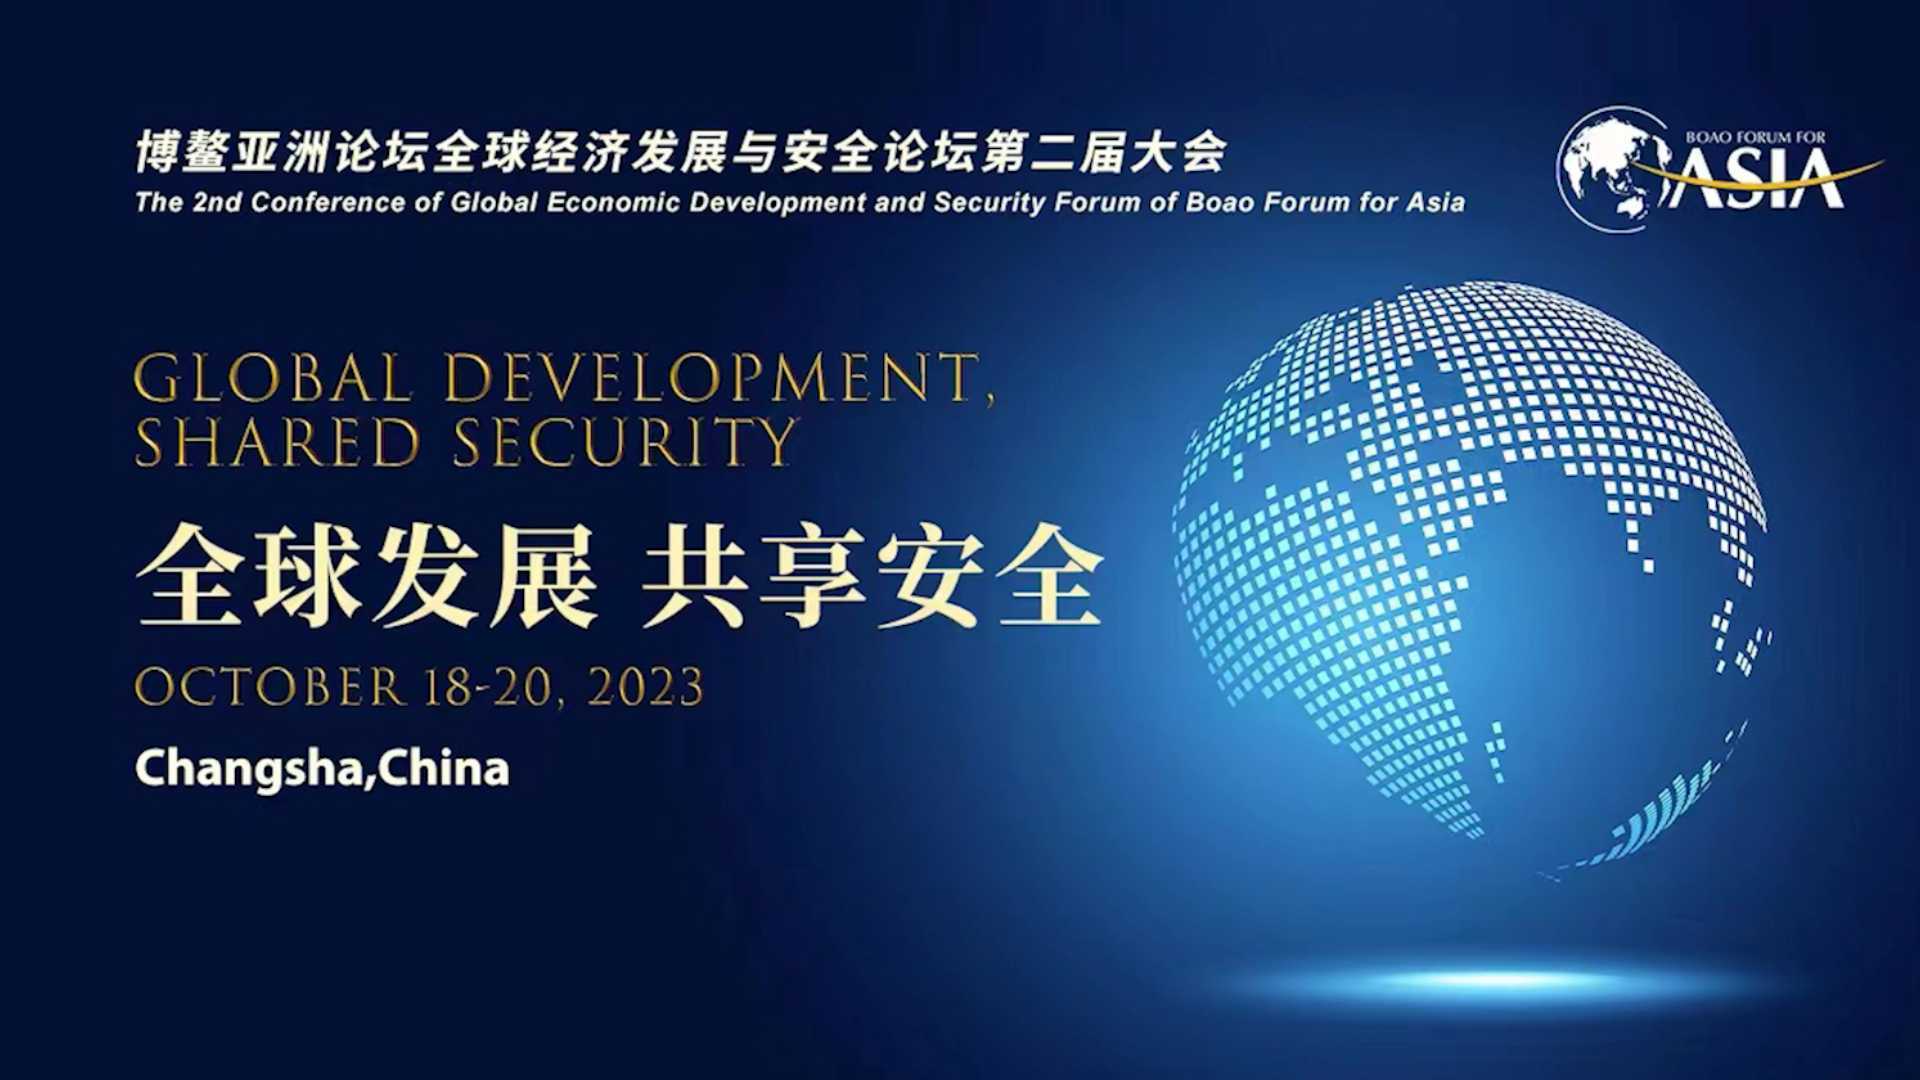 博鳌亚洲论坛全球经济发展与安全论坛第二届大会 宣传视频 Final 1080p